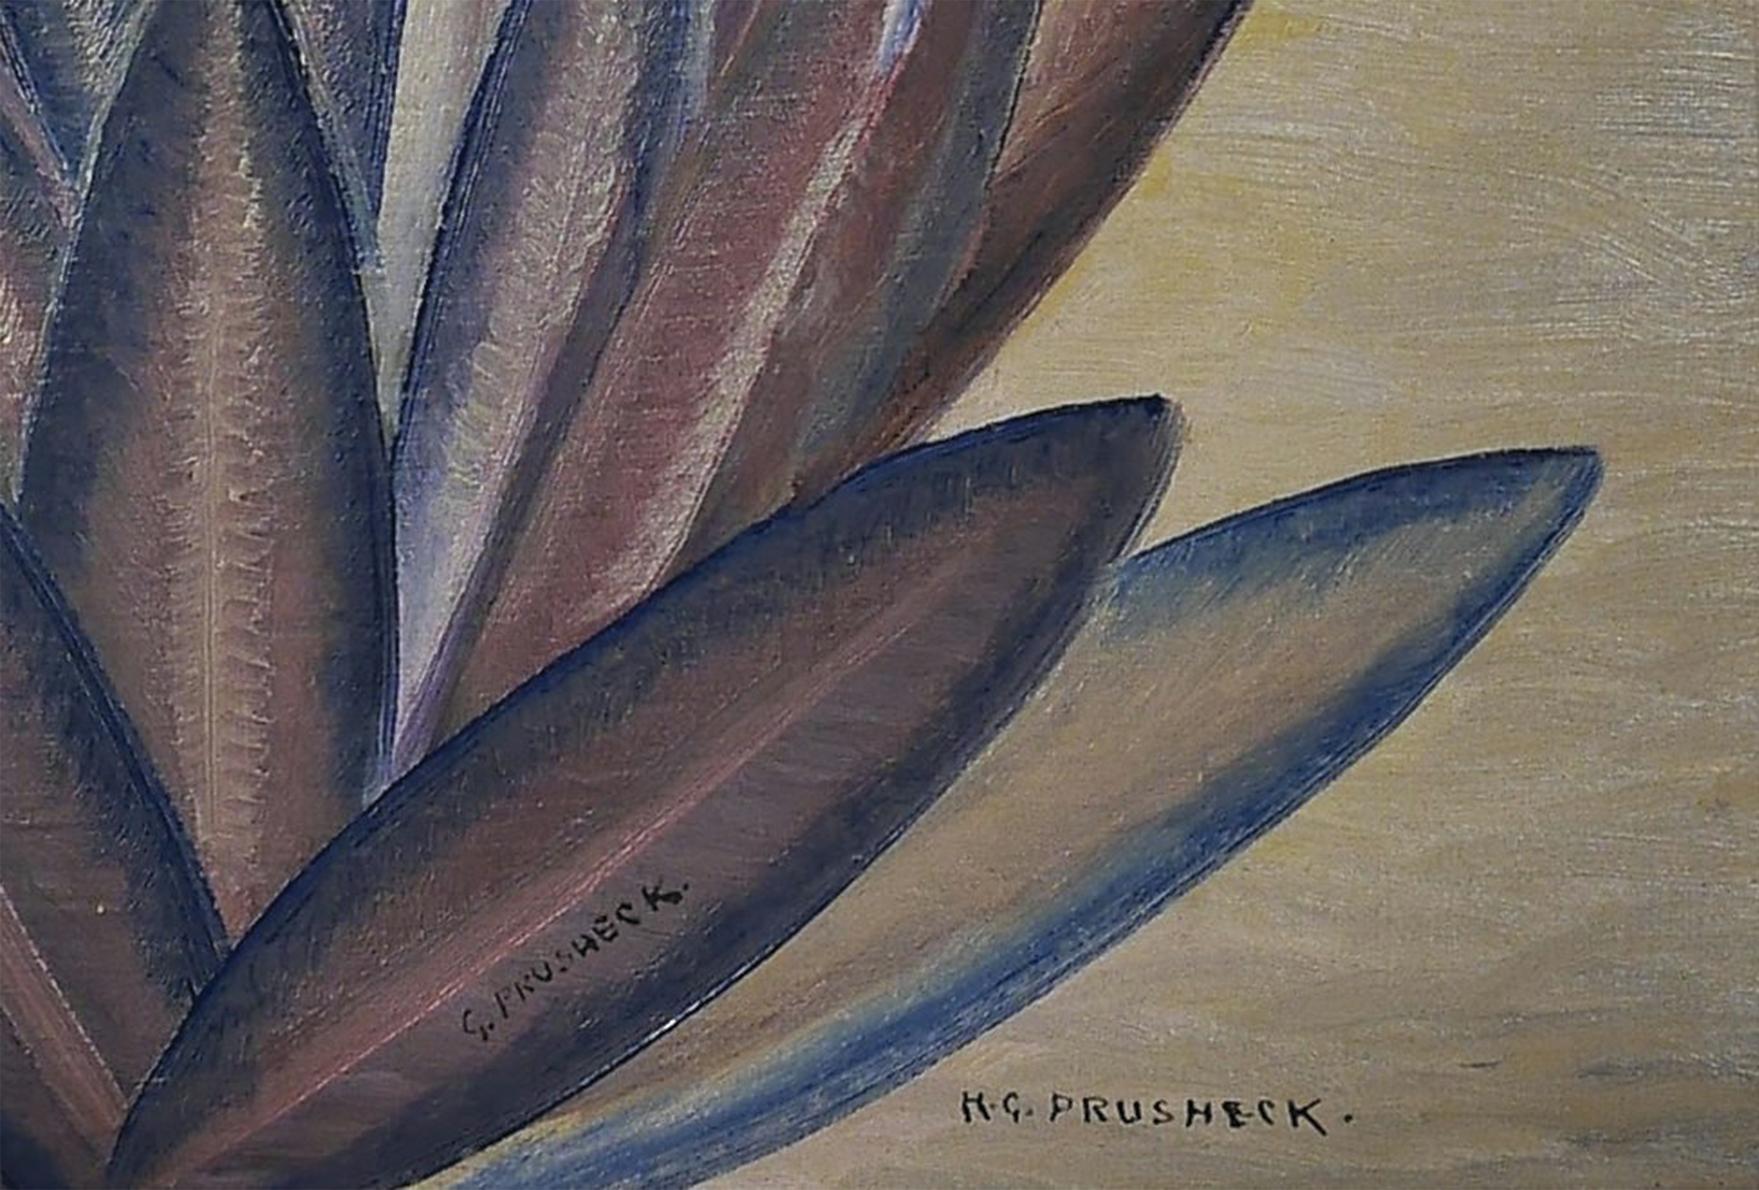 Harvey Gregory Prusheck (slovène/américain, 1887-1940)
Orchidée Vanda, vers 1930.
Huile sur toile
Signé en bas à droite
14 x 11.5 pouces
19.75 x 17 pouces, tel qu'encadré

Harvey Gregory Prusheck était un artiste et un professeur d'art